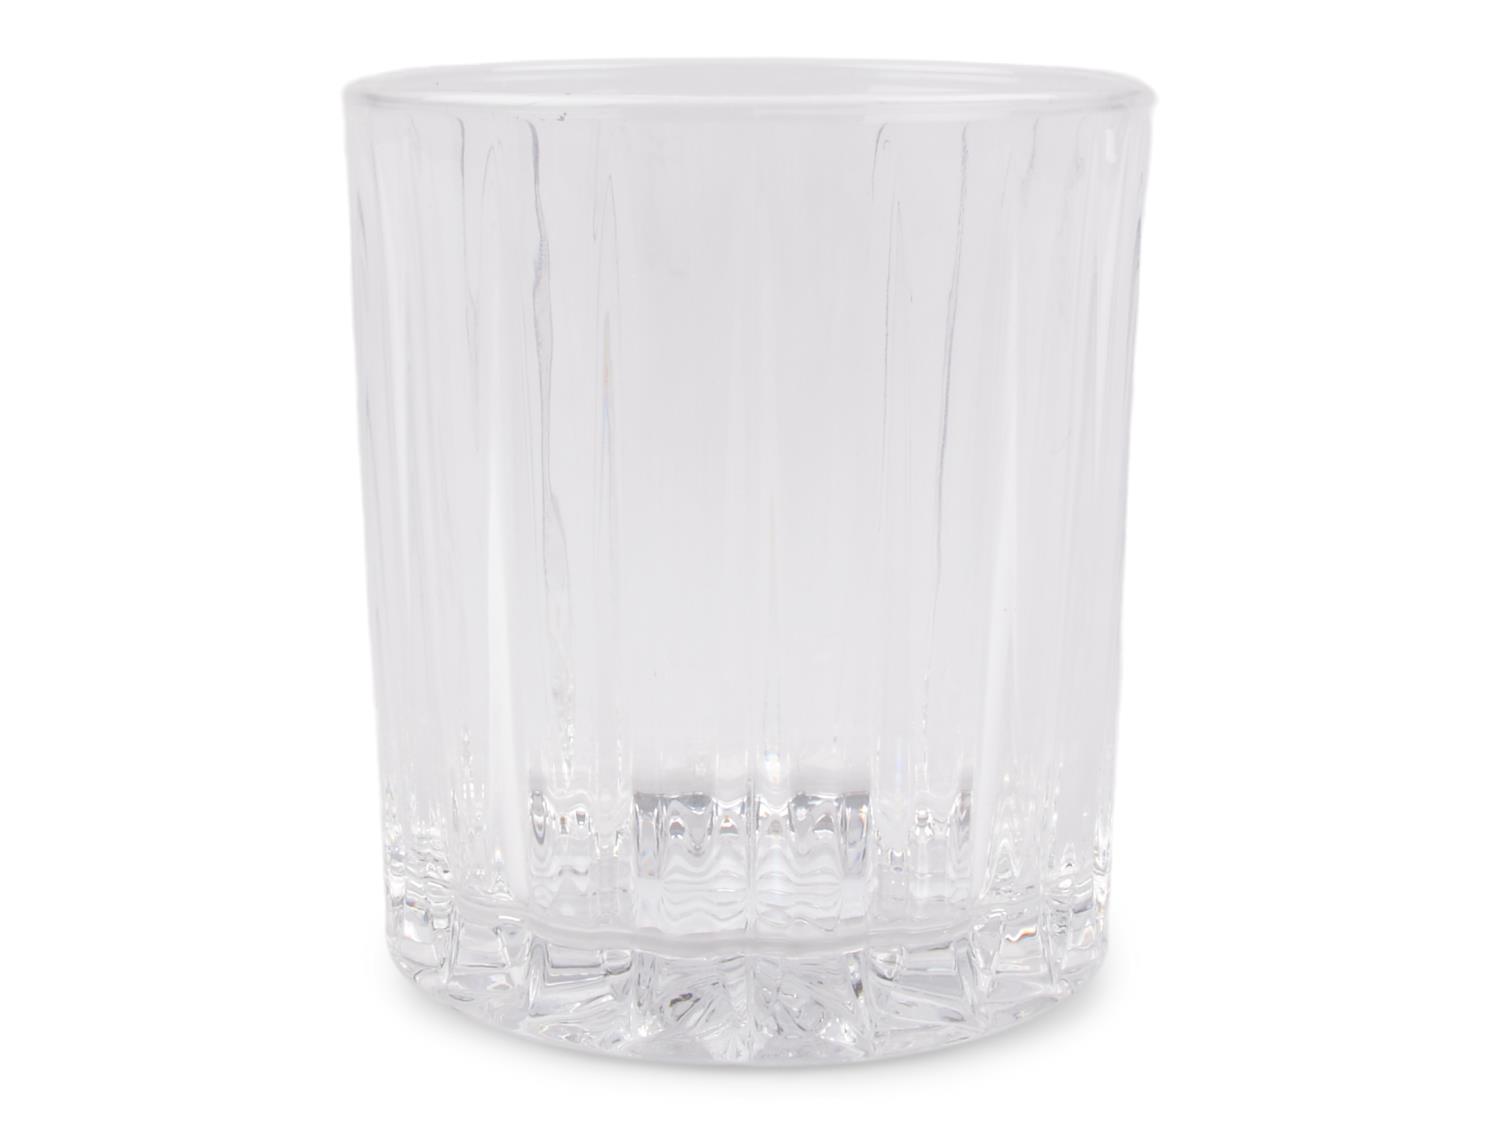 Whiskeyglass Revel 35 cl pr stk